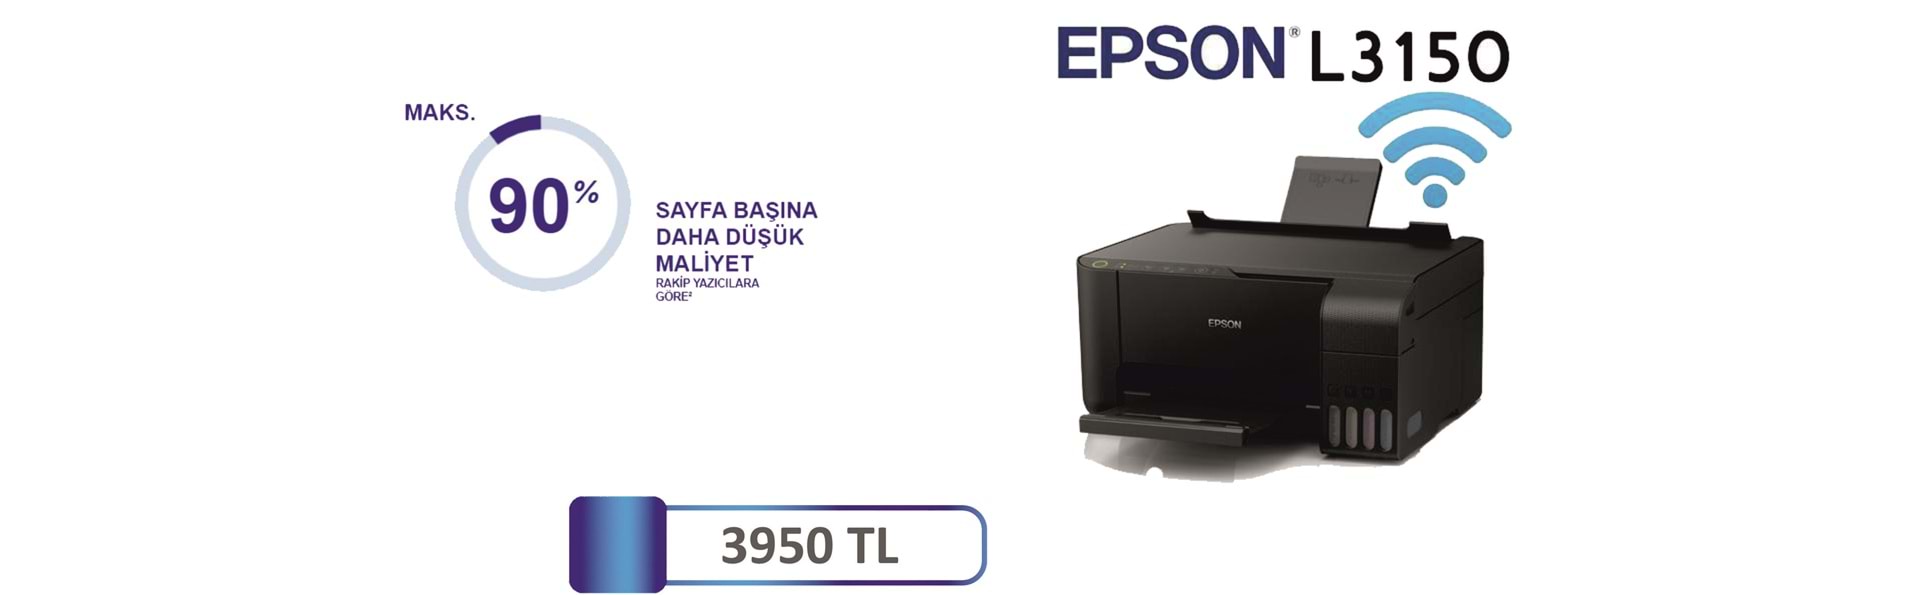 epson l3150 yazıcı